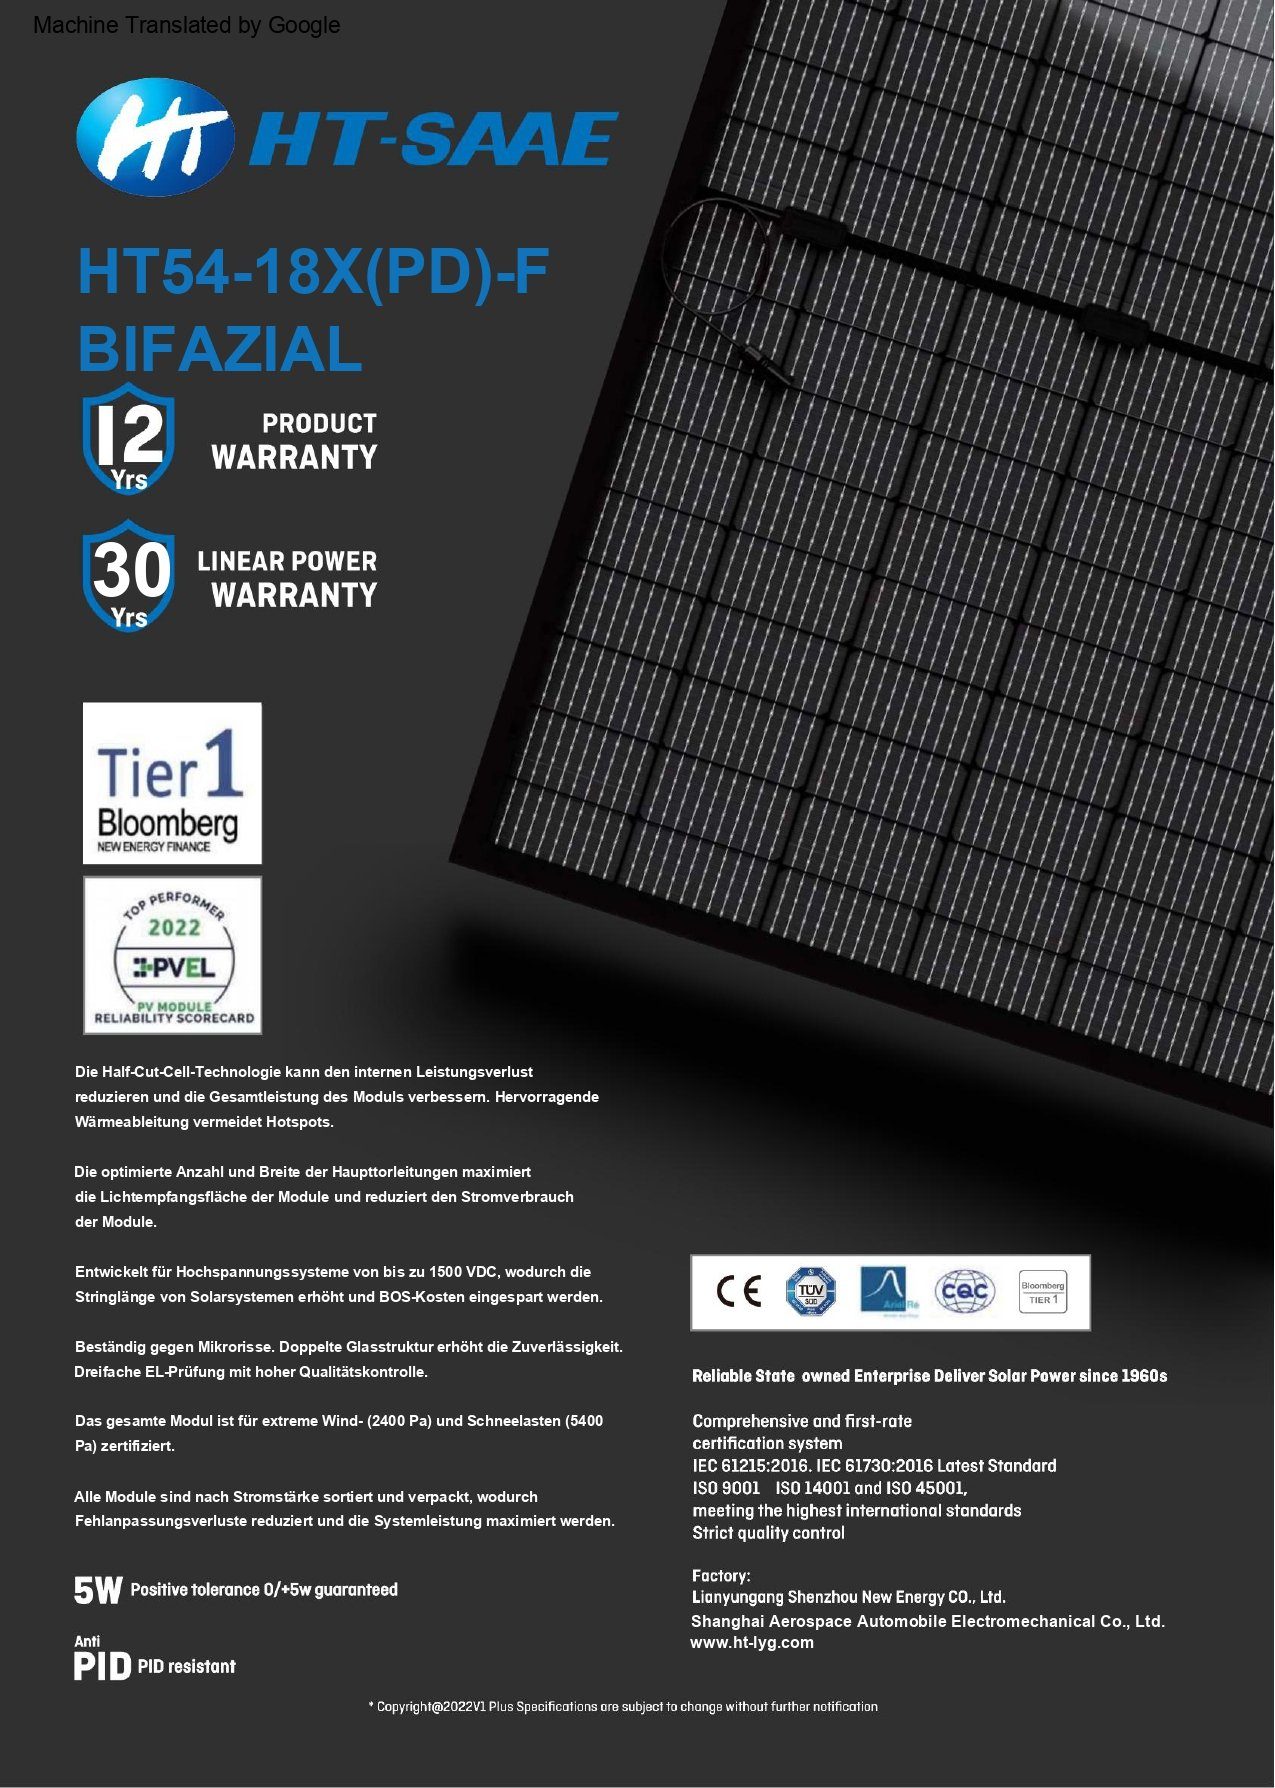 FULL-BLACK EPP.Solar HT54-18X(PD)-F BIFAZIAL GLAS-GLAS MODUL Solaranlage 410W PV